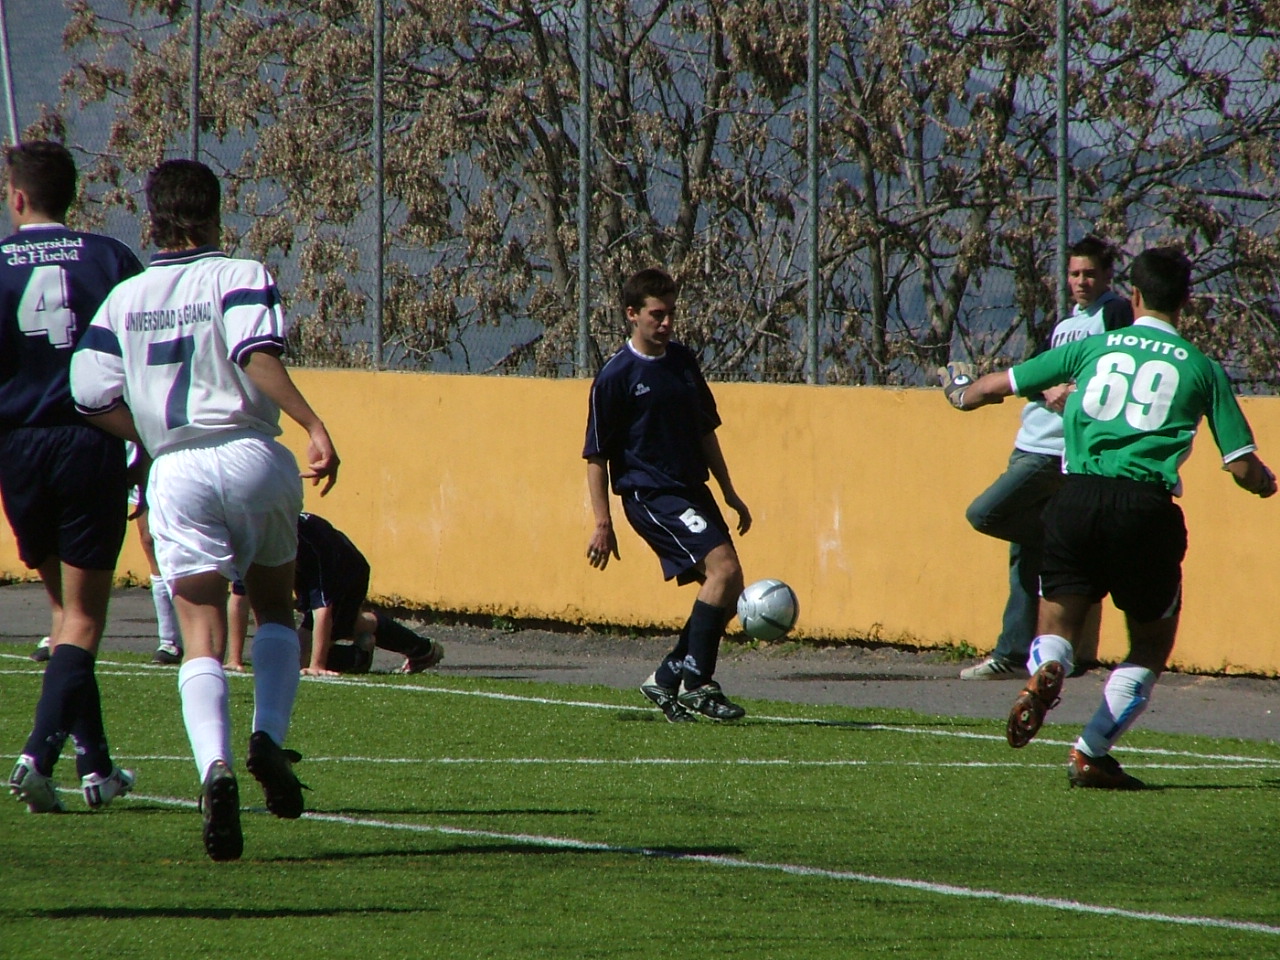 Varias personas jugando al fútbol sobre césped en el centro de actividades deportivas de la Universidad de Granada